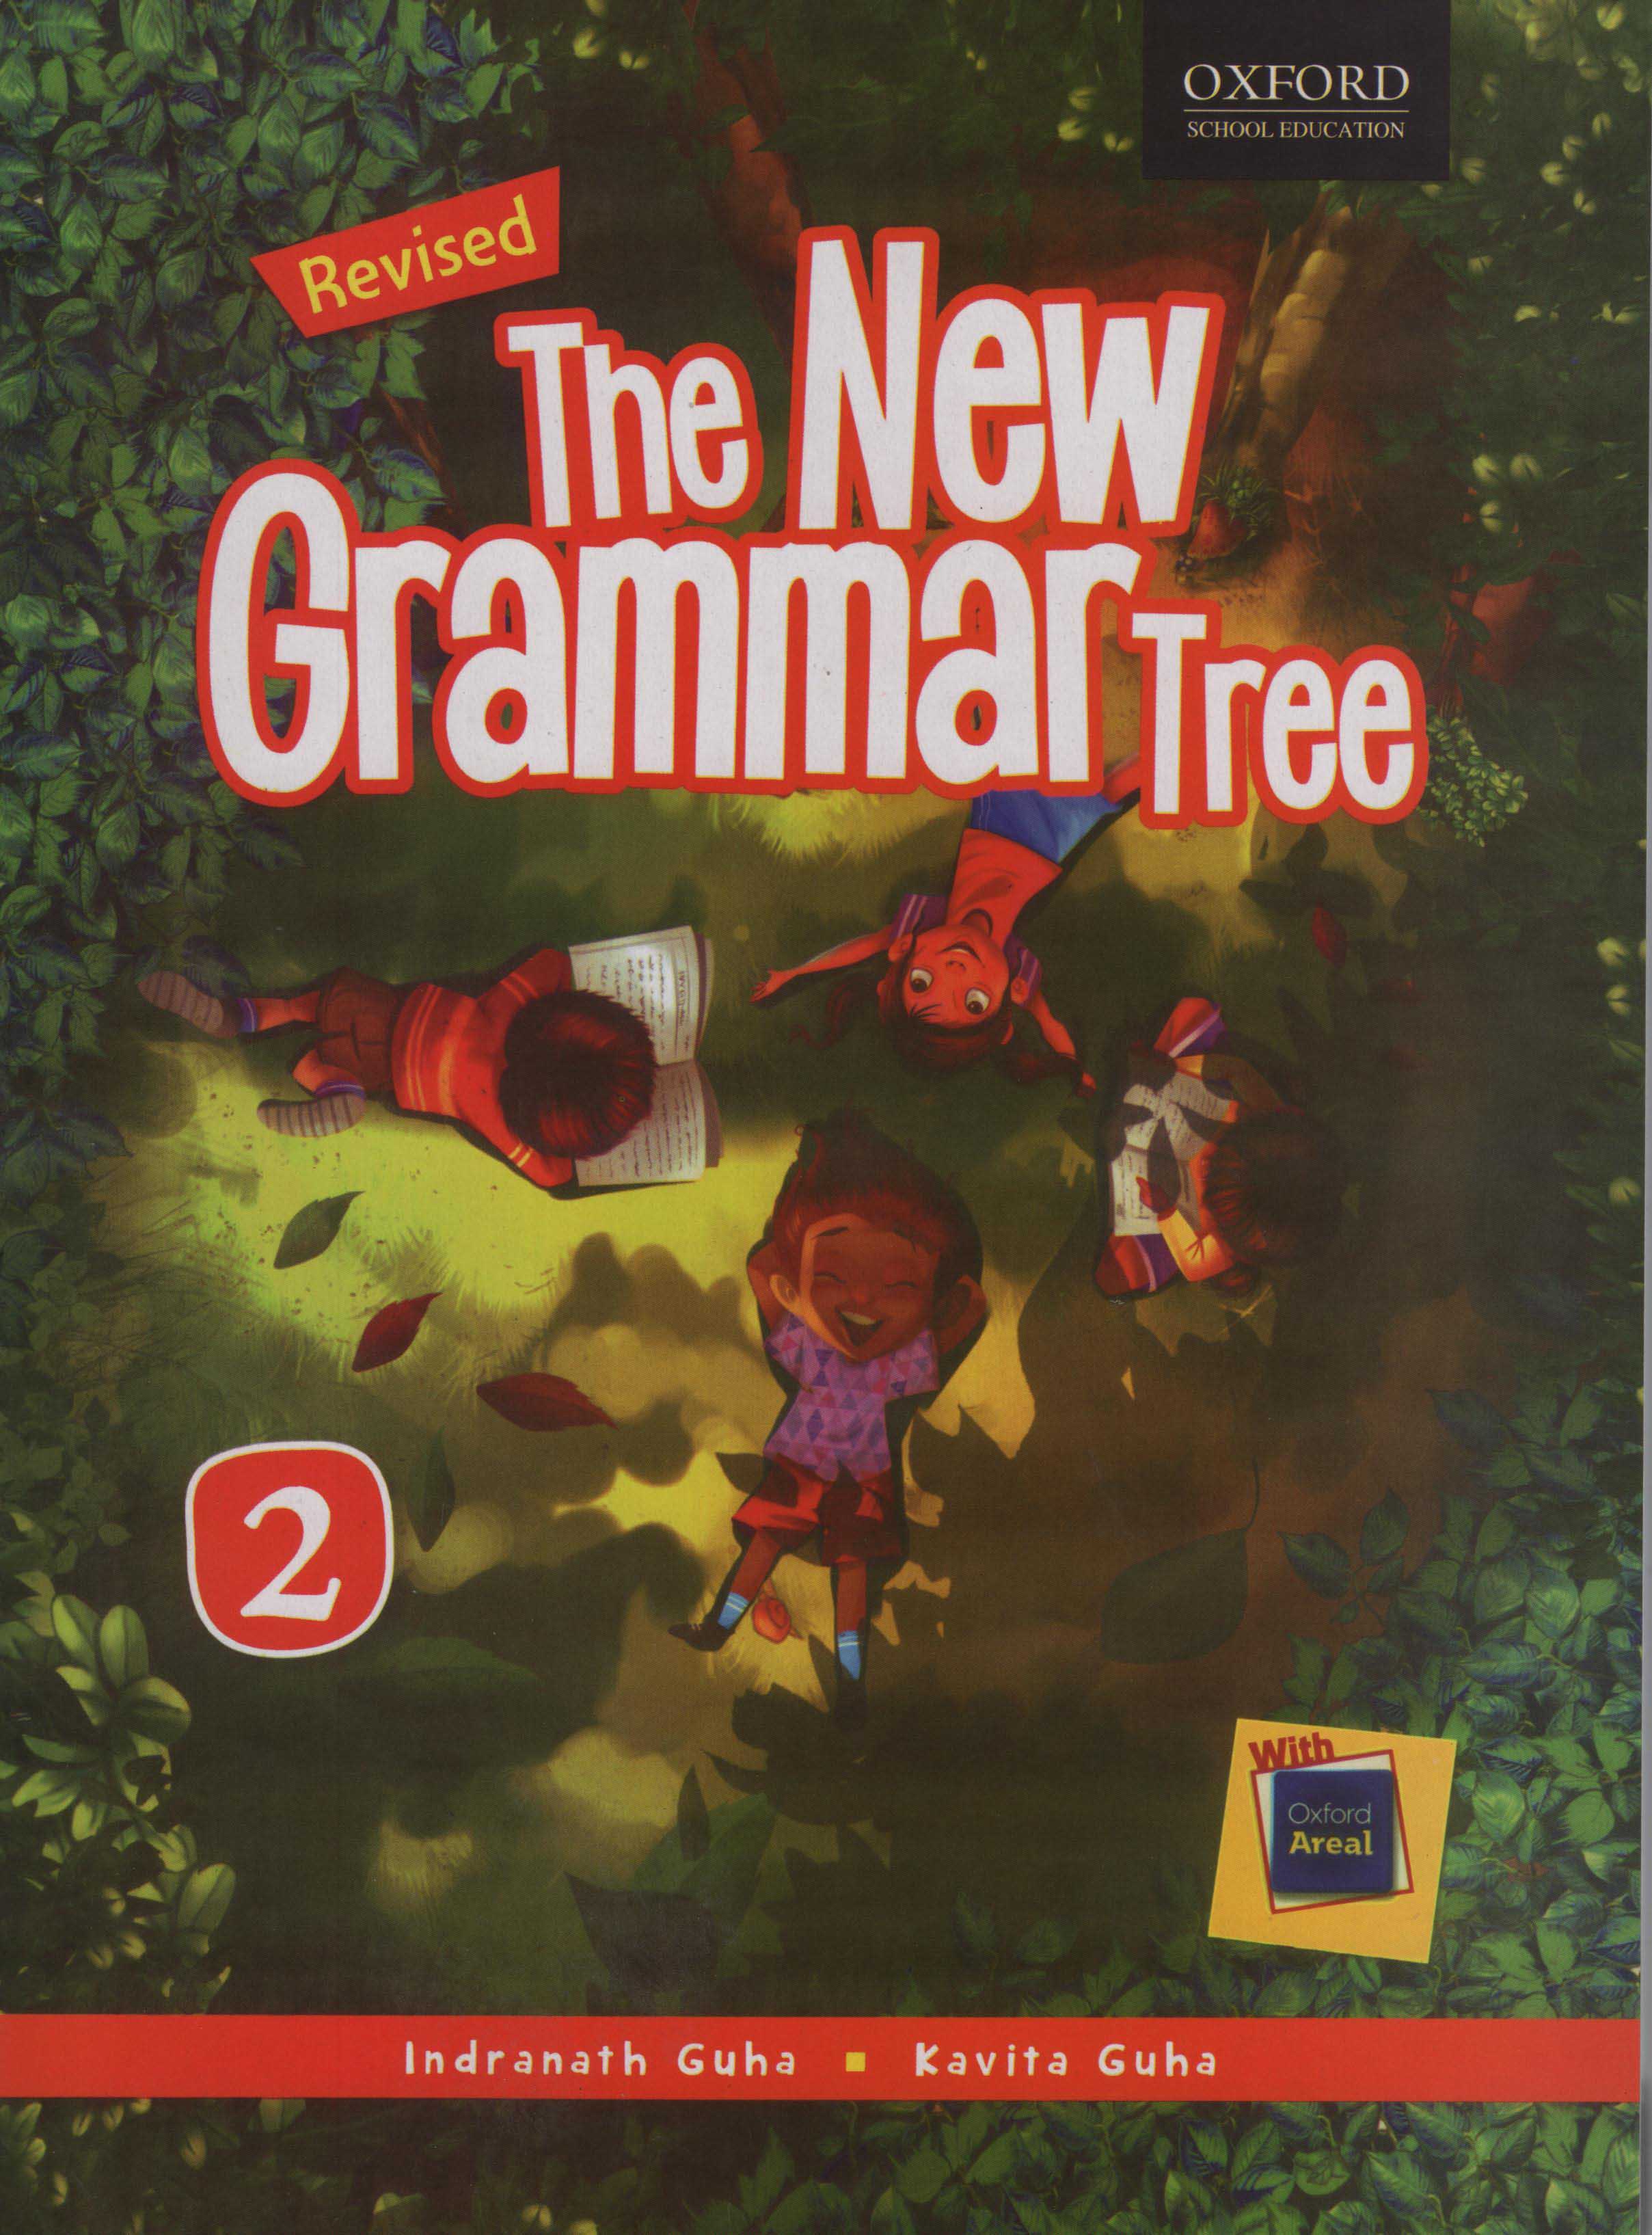 The New Grammar Tree Book 2